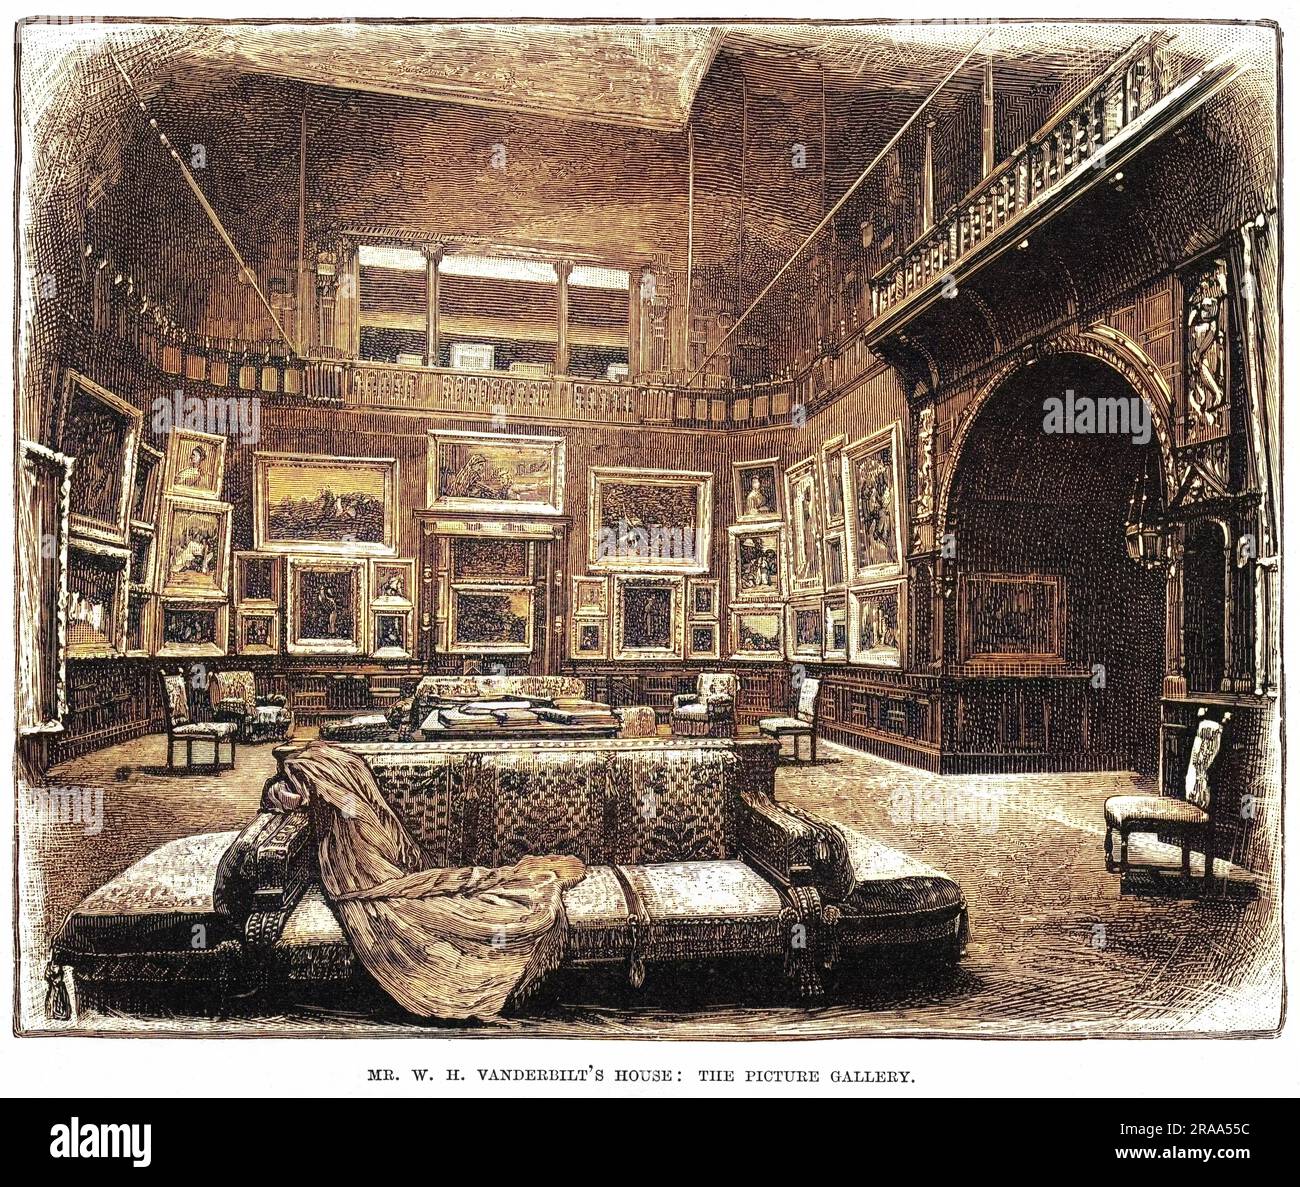 La pinacoteca nella casa di New York di William Henry Vanderbilt, magnate delle ferrovie. Nessuna delle immagini raffigura un treno ferroviario, sorprendentemente. Data: 1883 Foto Stock